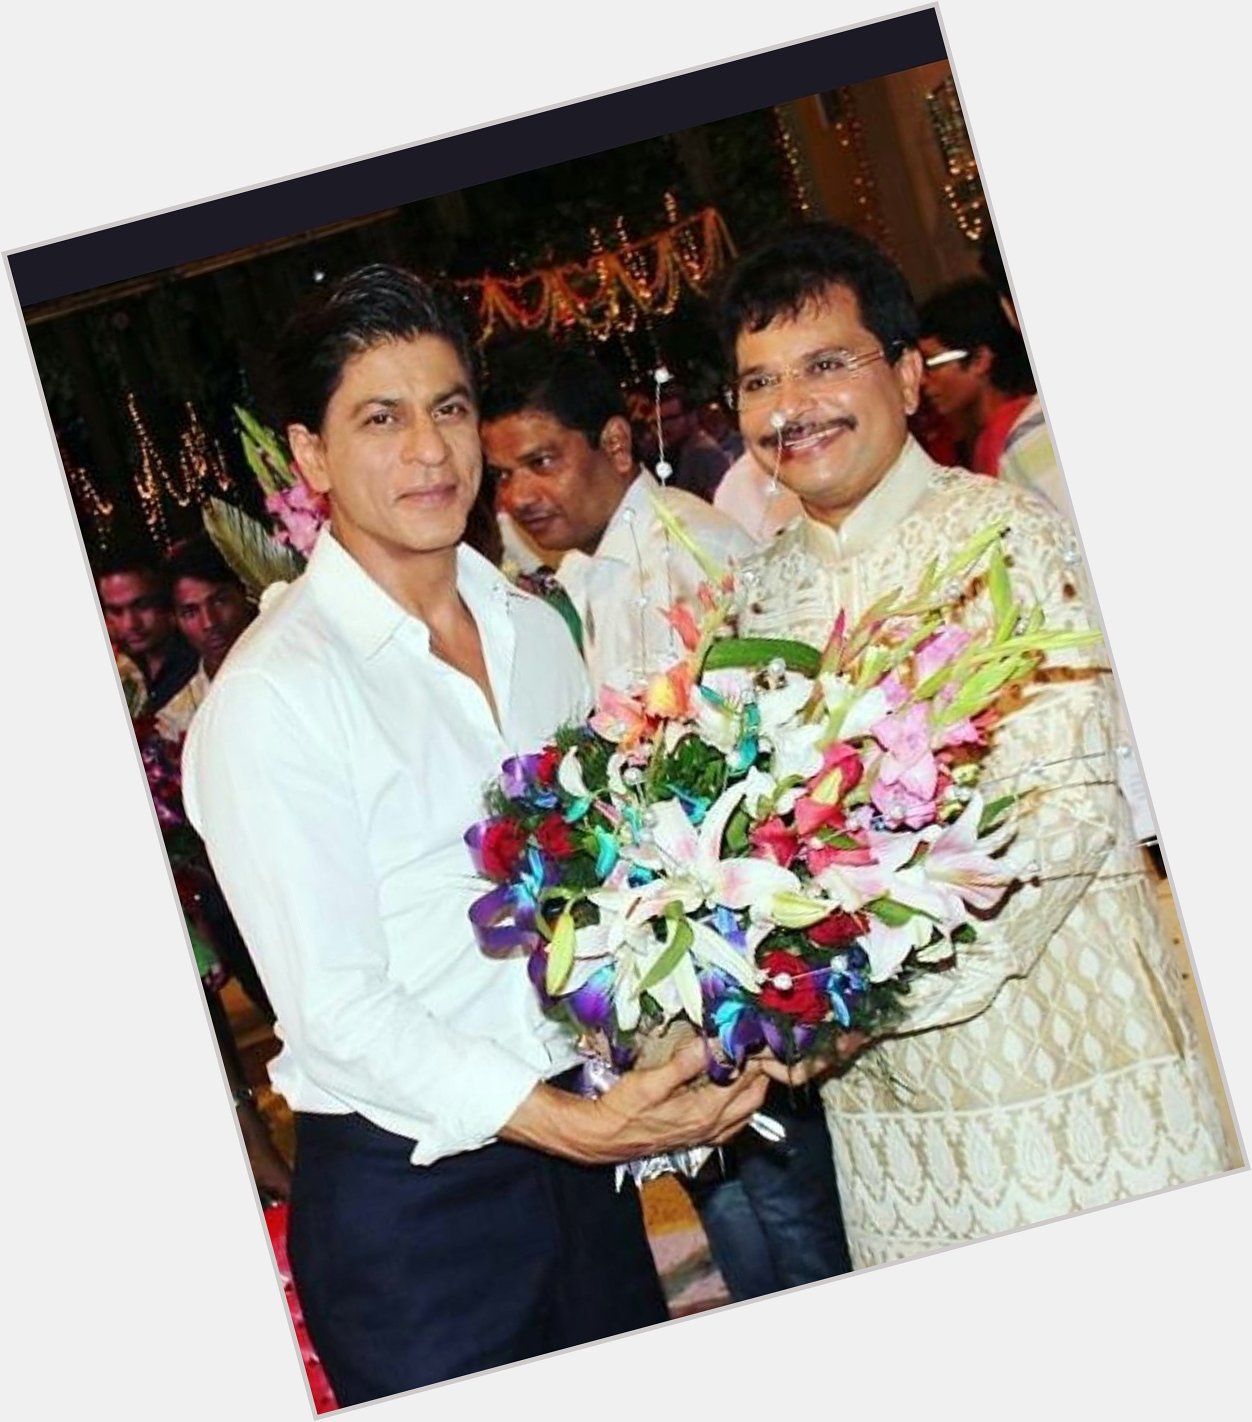 Happy Birthday Shahrukh Khan!
PC:     